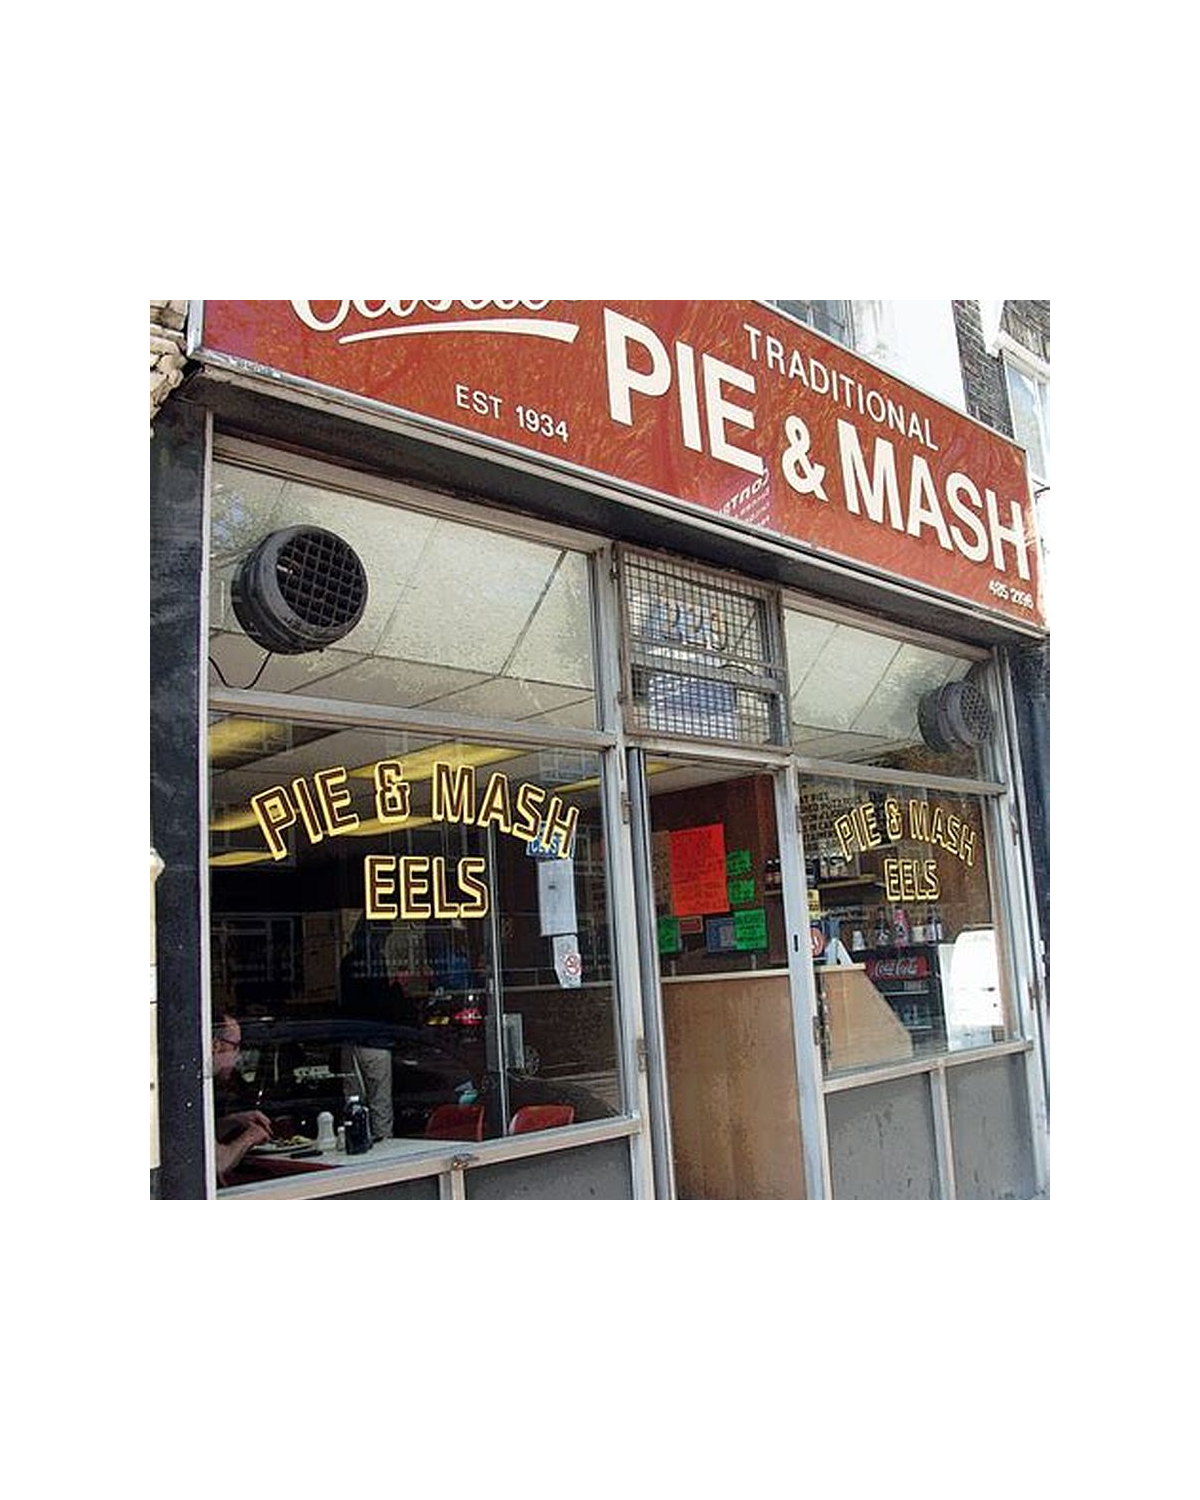 Pie and mash shopfront